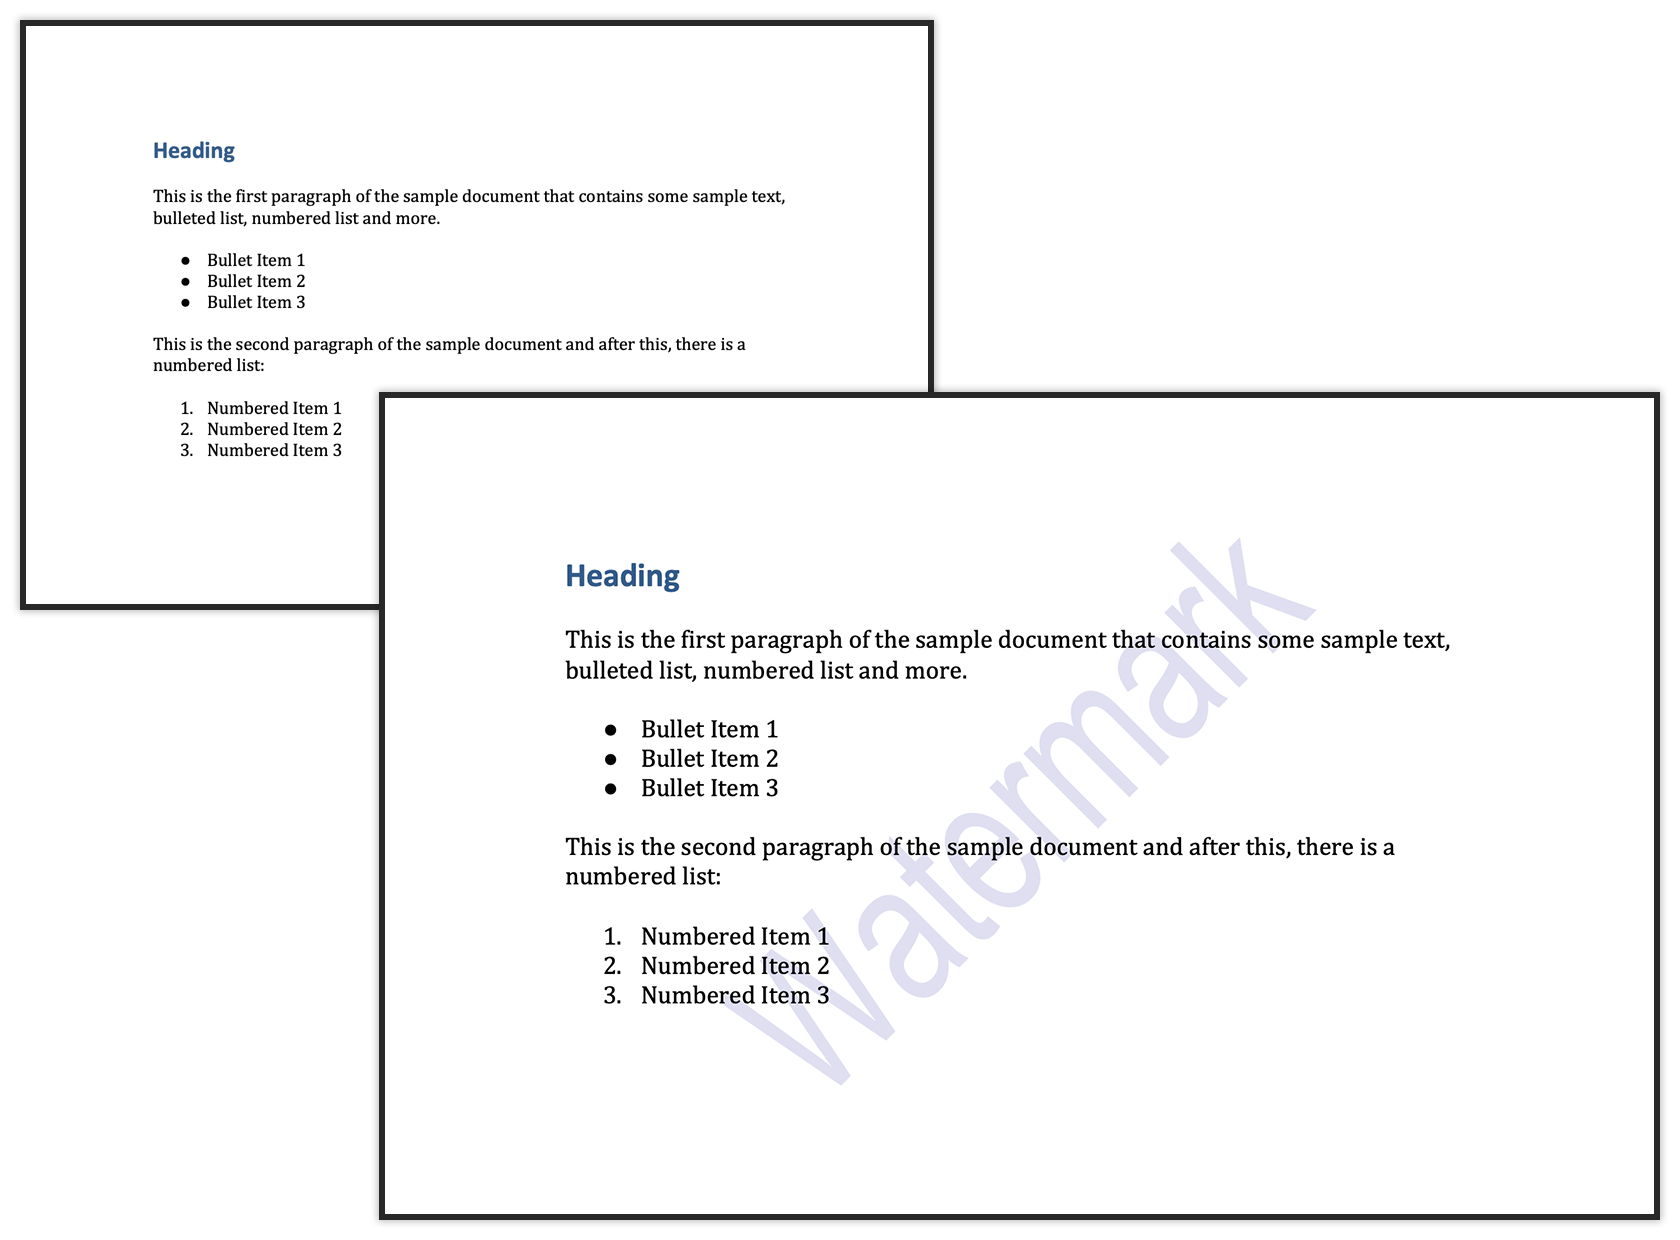 Příklad textového vodoznaku v dokumentu Word pomocí Java